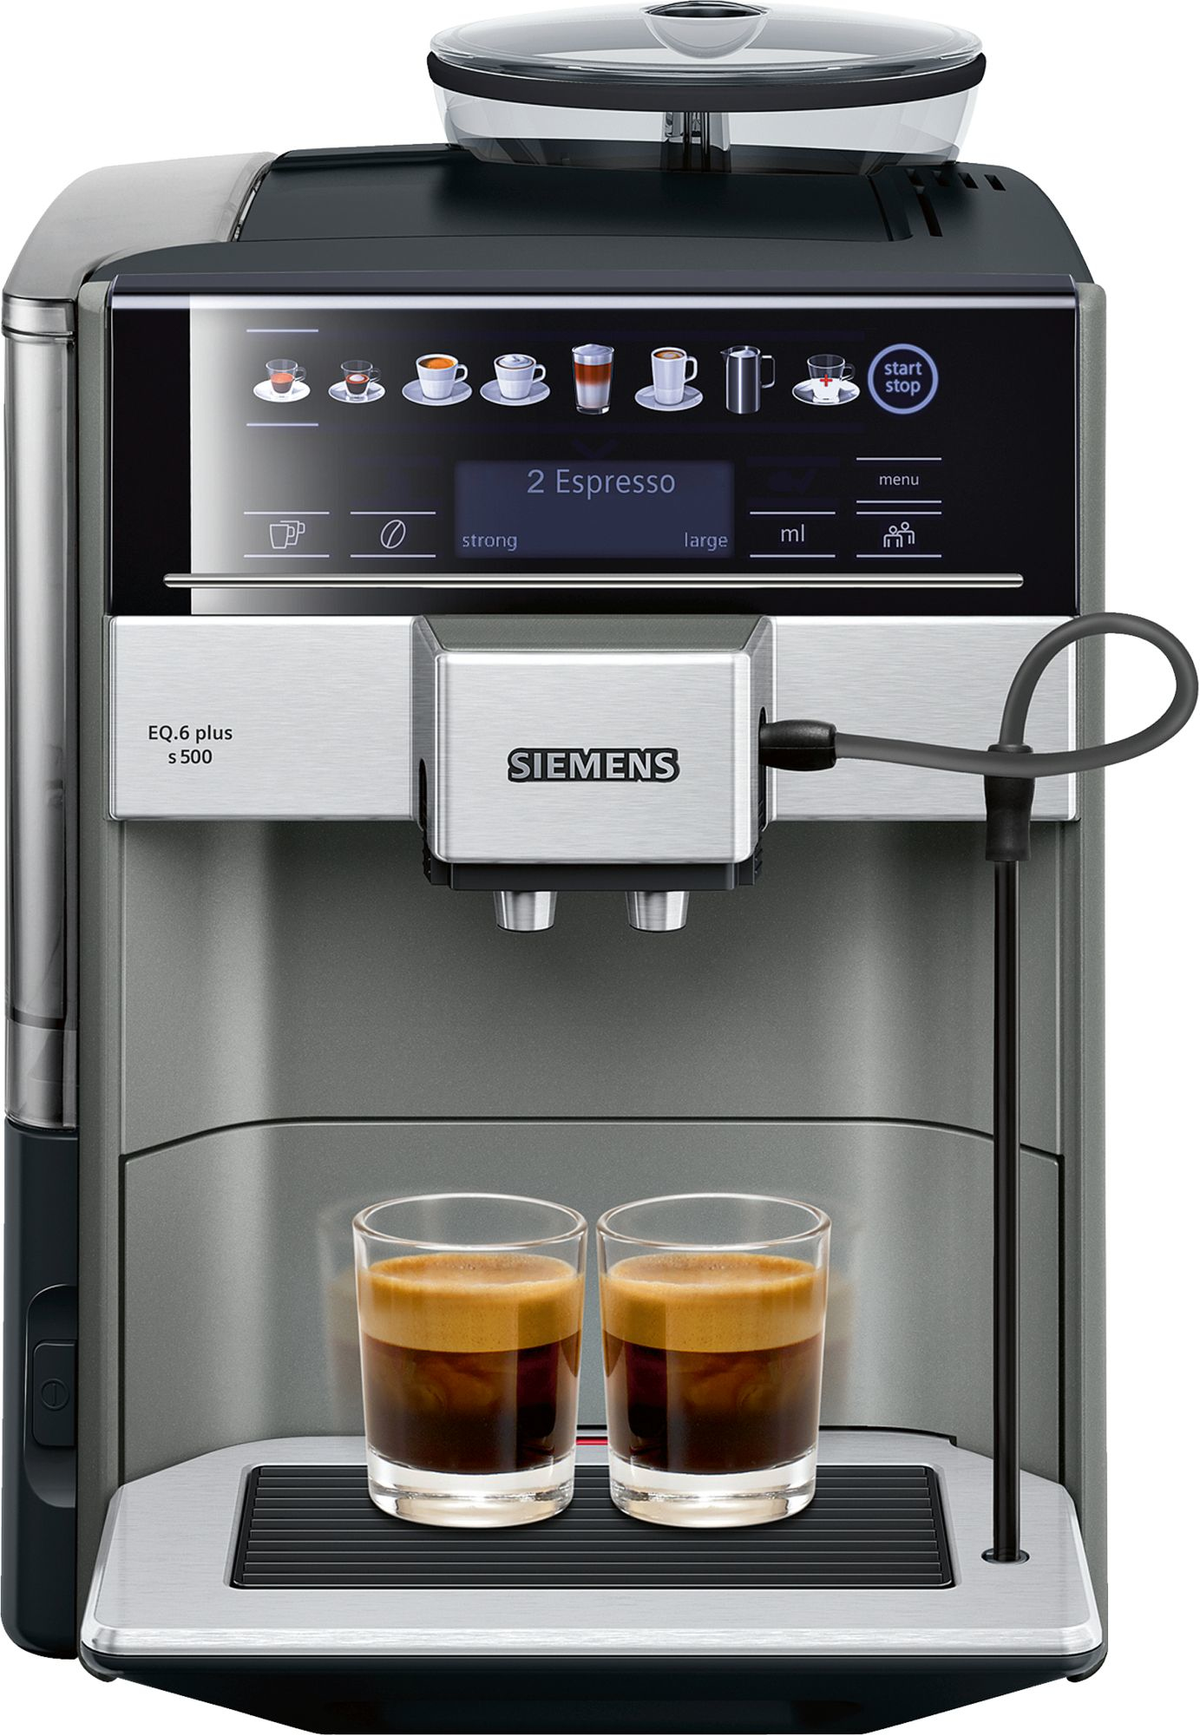 Cafetera Siemens Te655203rw 19 eq.600 recipiente en grano 300g 8 bebidas programadas color negro eléctrica espresso 17 totalmente express barbar 1500 2 eq6 s500